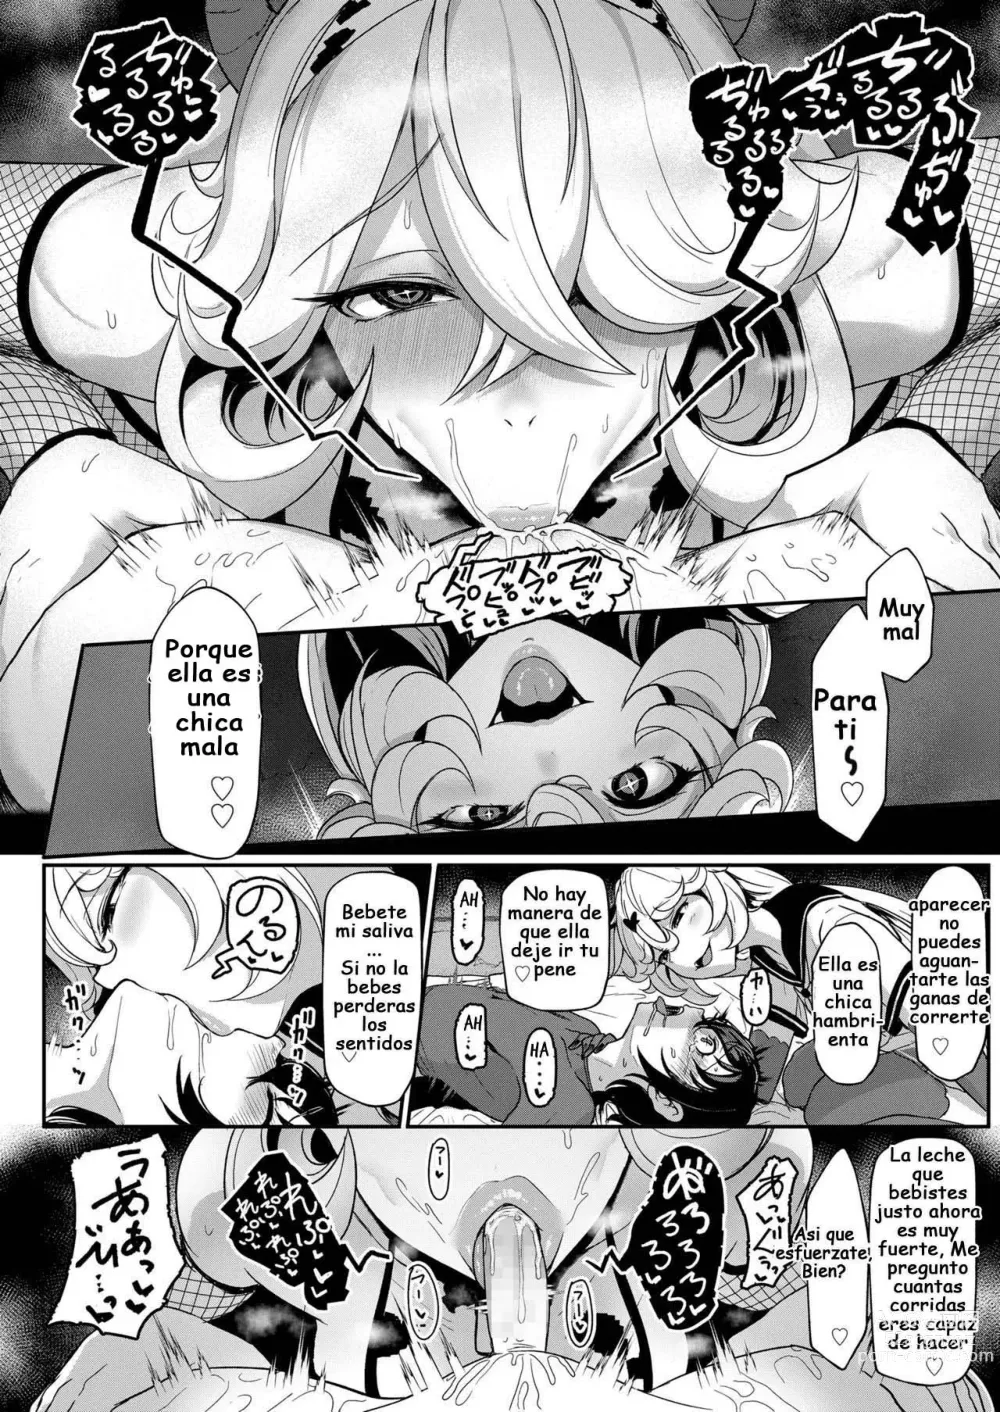 Page 7 of manga Black Strawberry